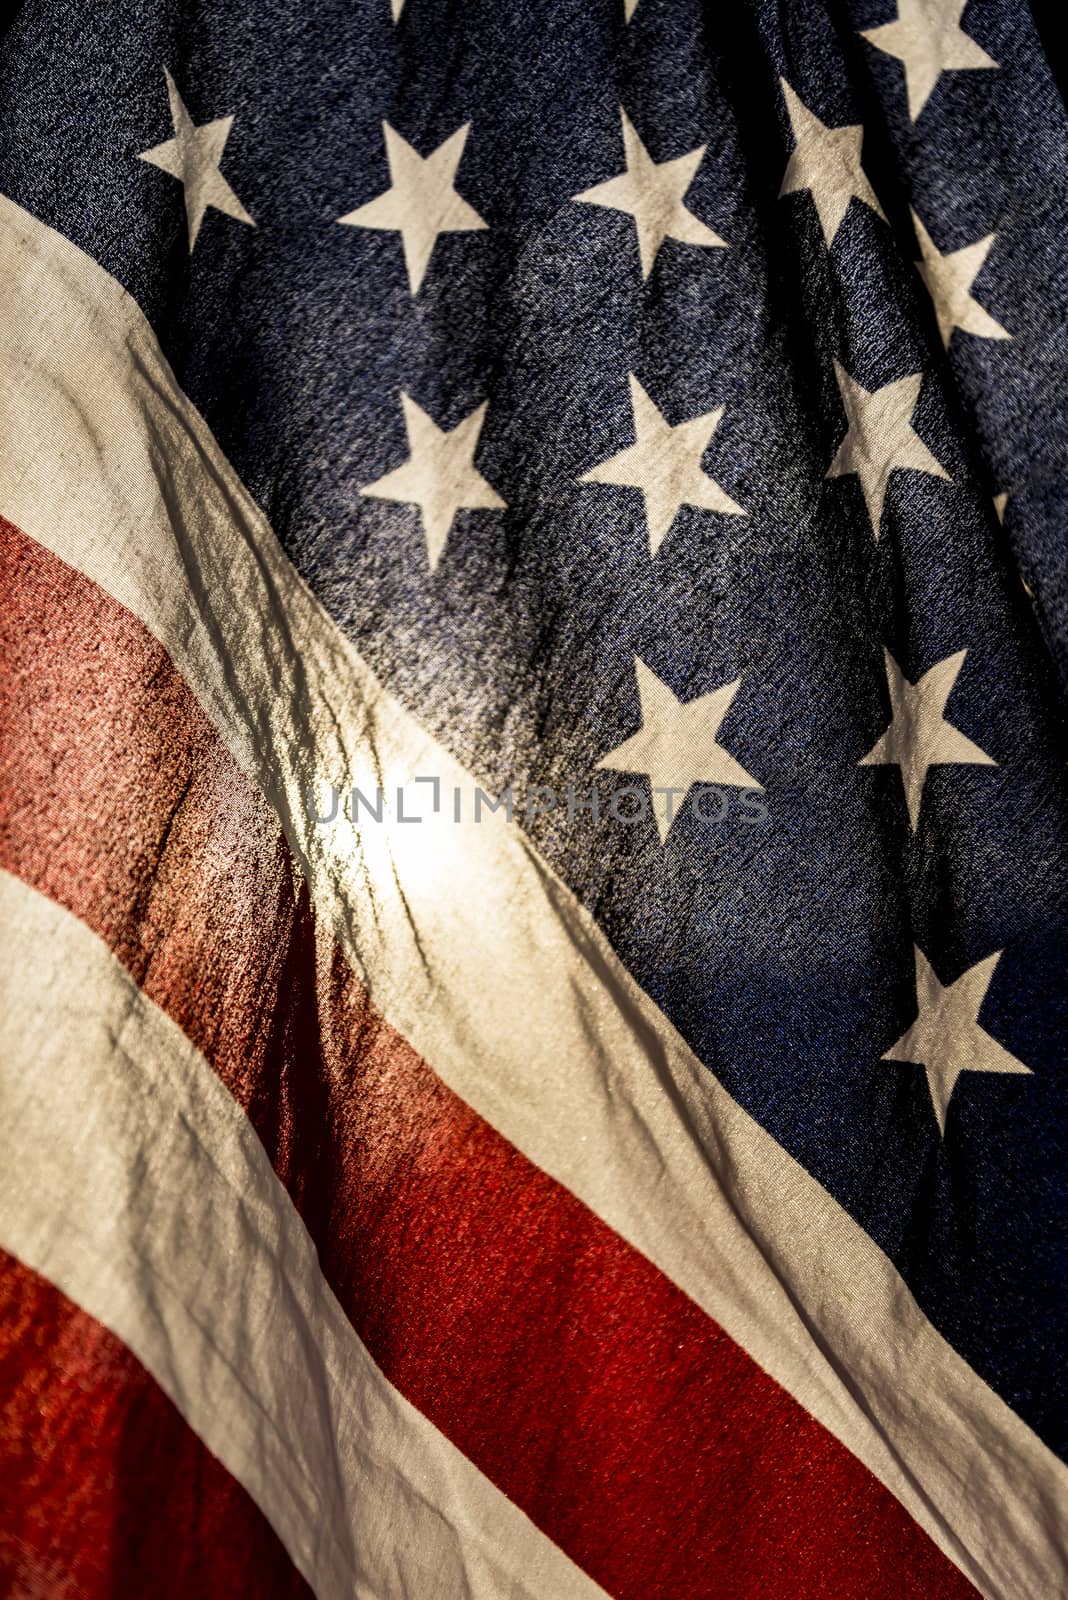 grunge American flag by edella